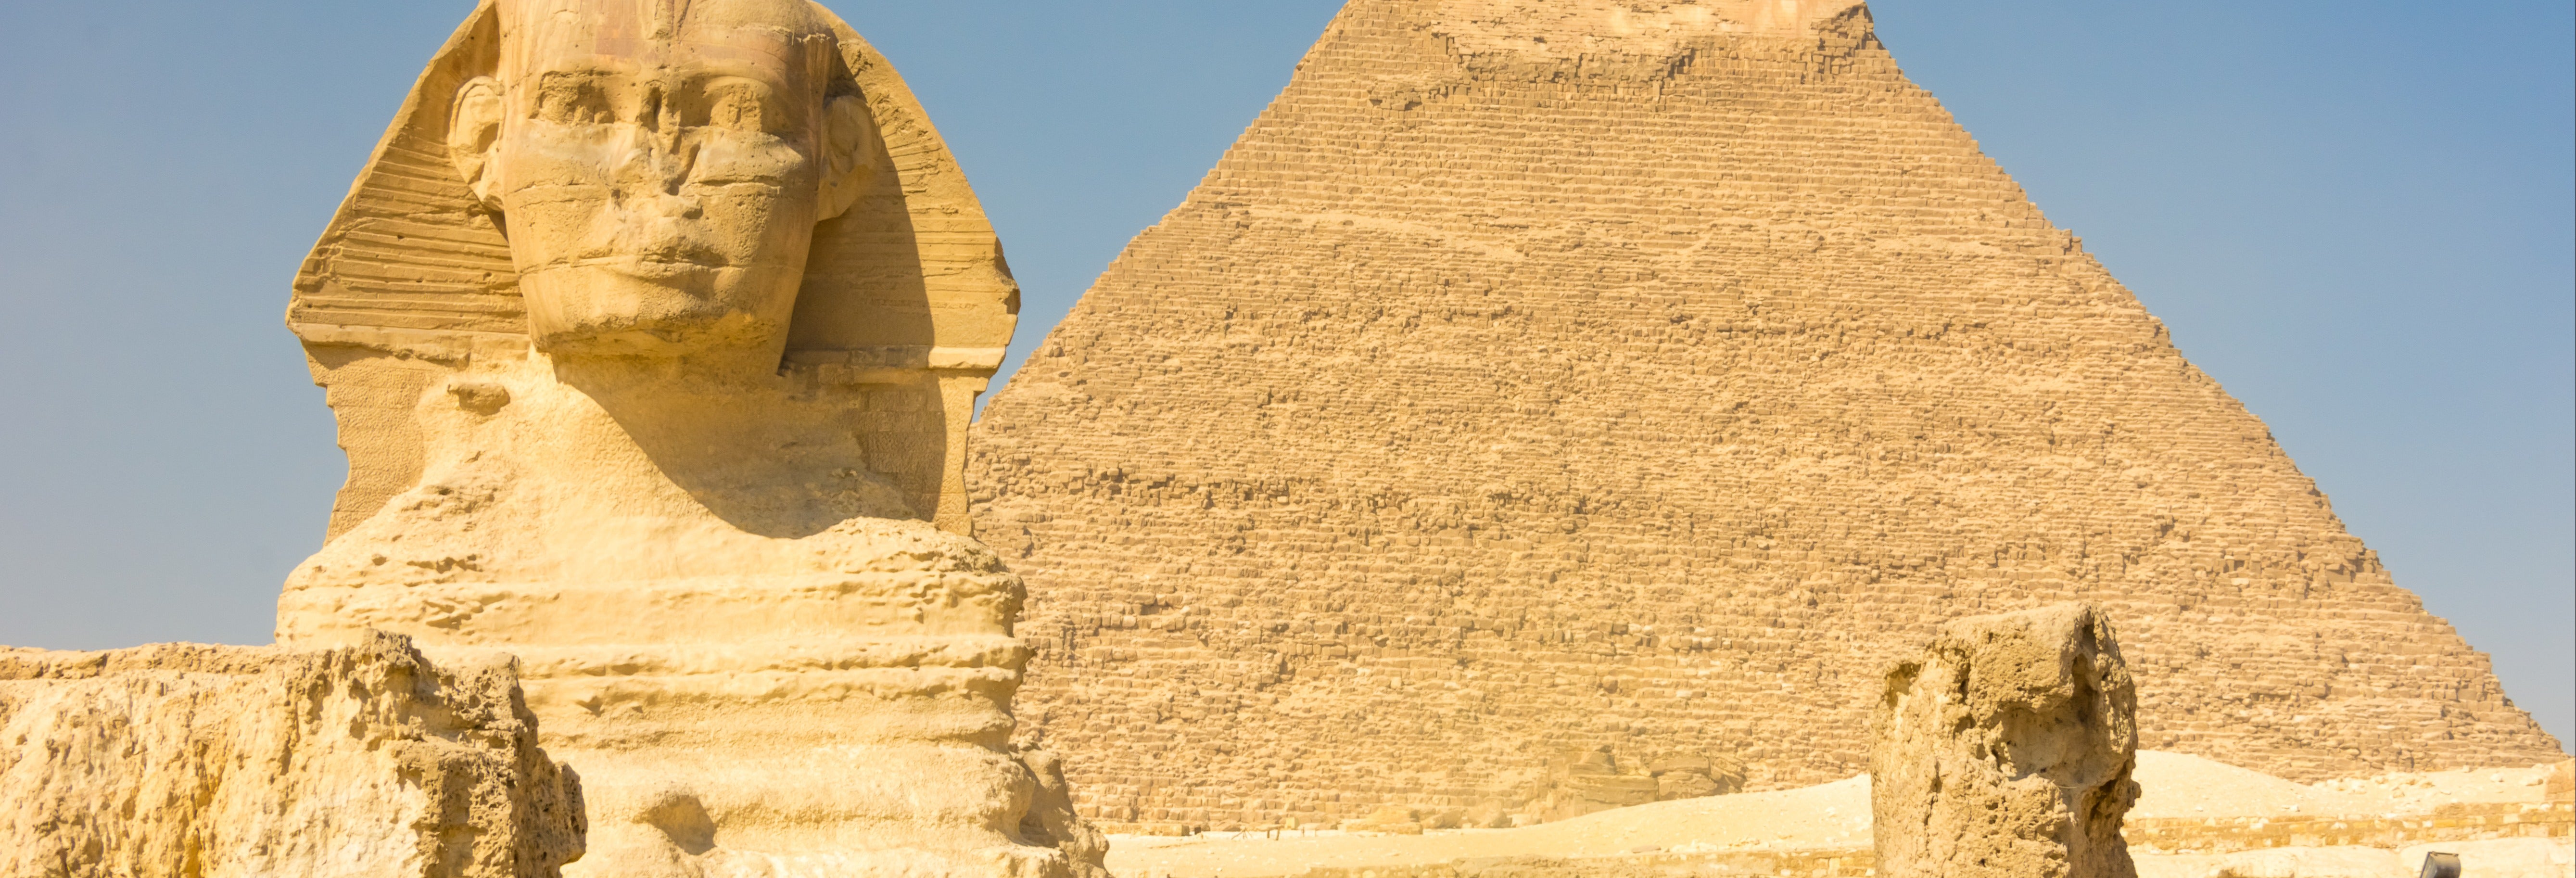 Pyramids of Giza, Memphis and Saqqara